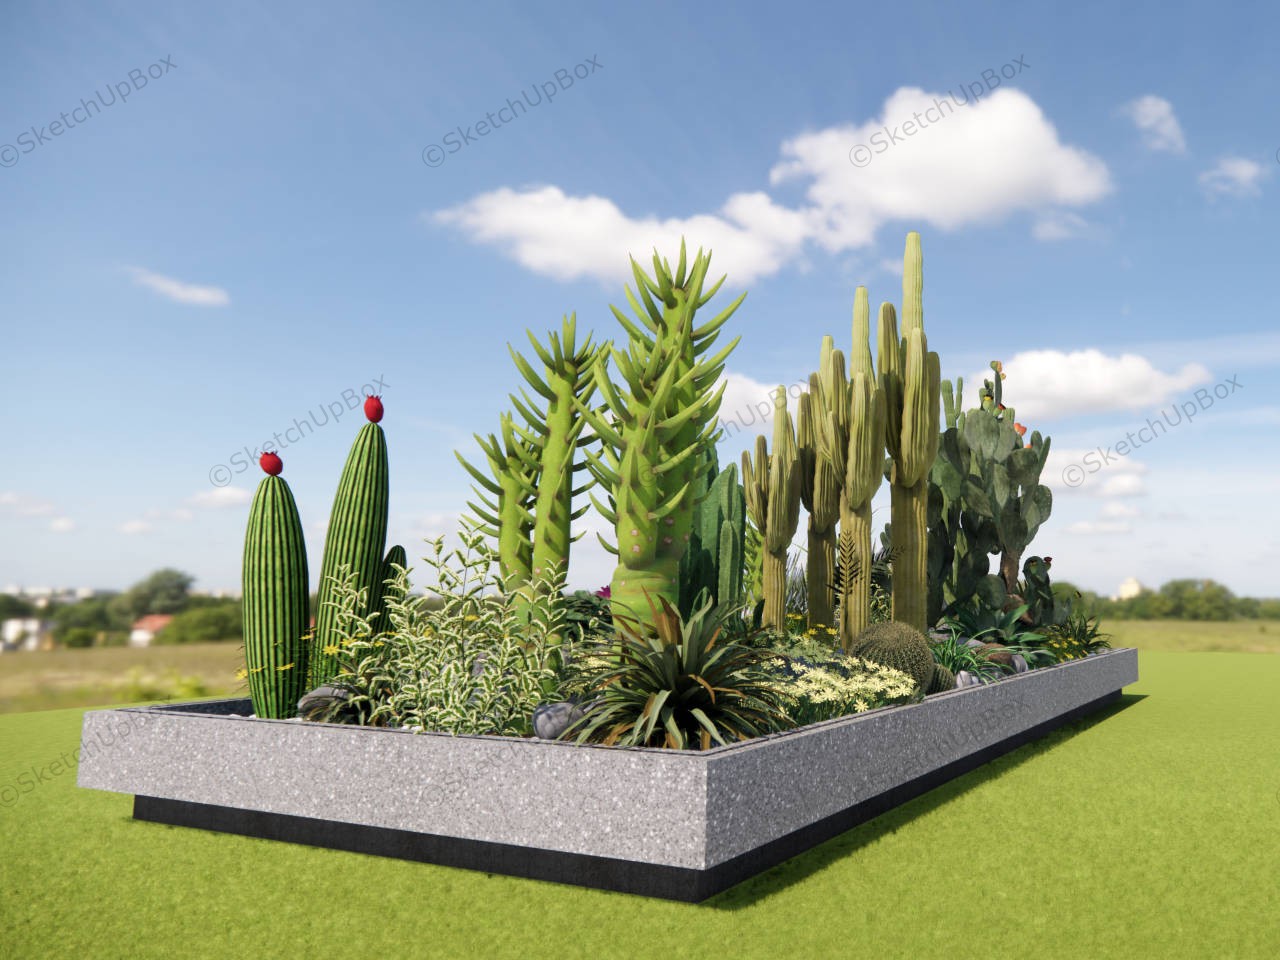 Cactus Garden Ideas Landscape sketchup model preview - SketchupBox